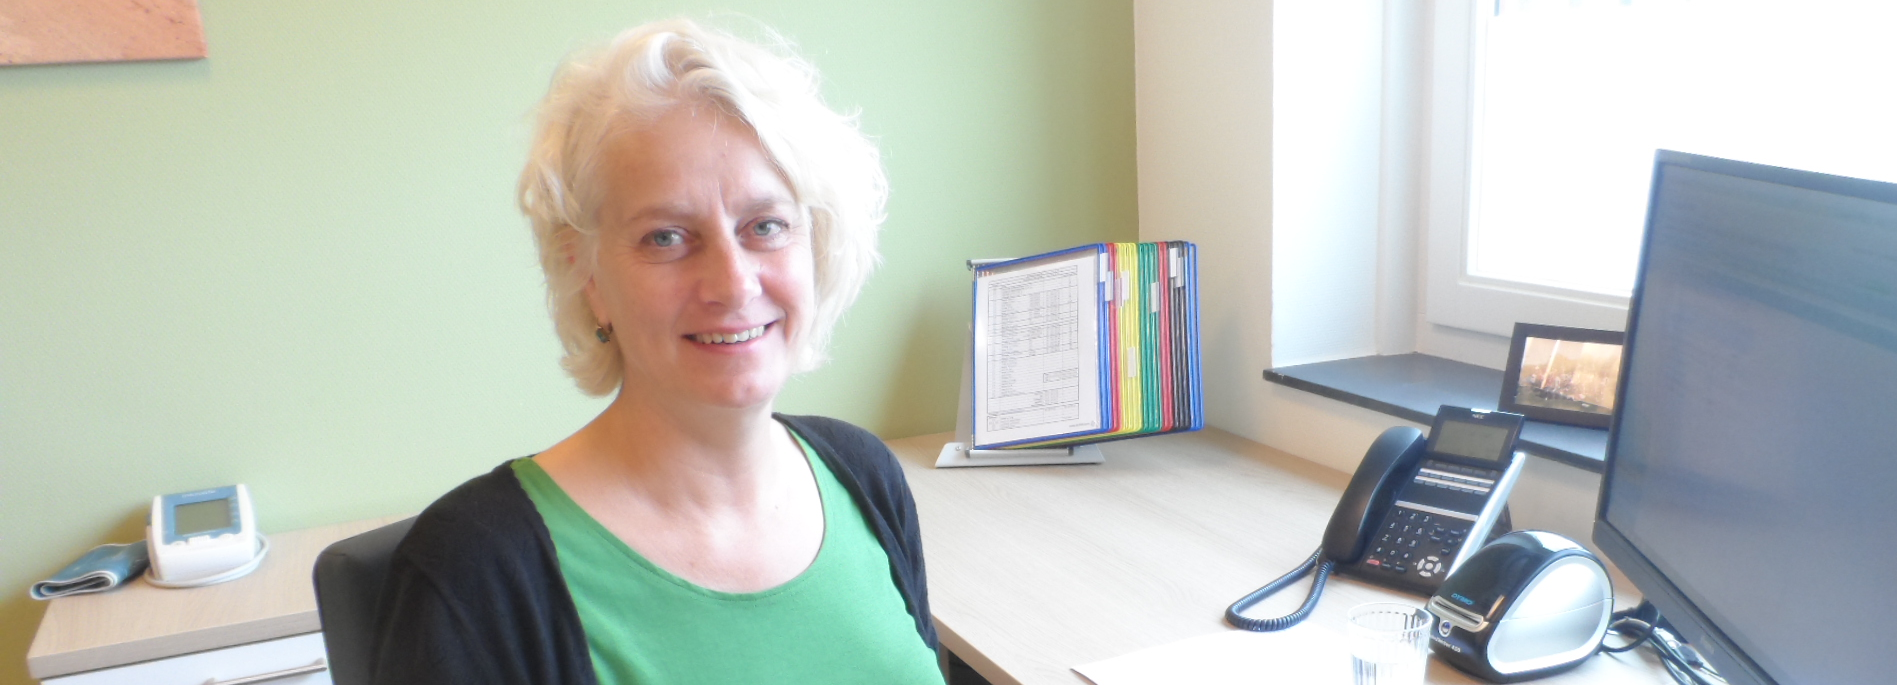 Hedwig Hanselman, praktijkondersteuner bij huisartsenpraktijk in Doesburg, richt zich bij de behandeling van etalagebenen vooral op preventie en leefstijl.